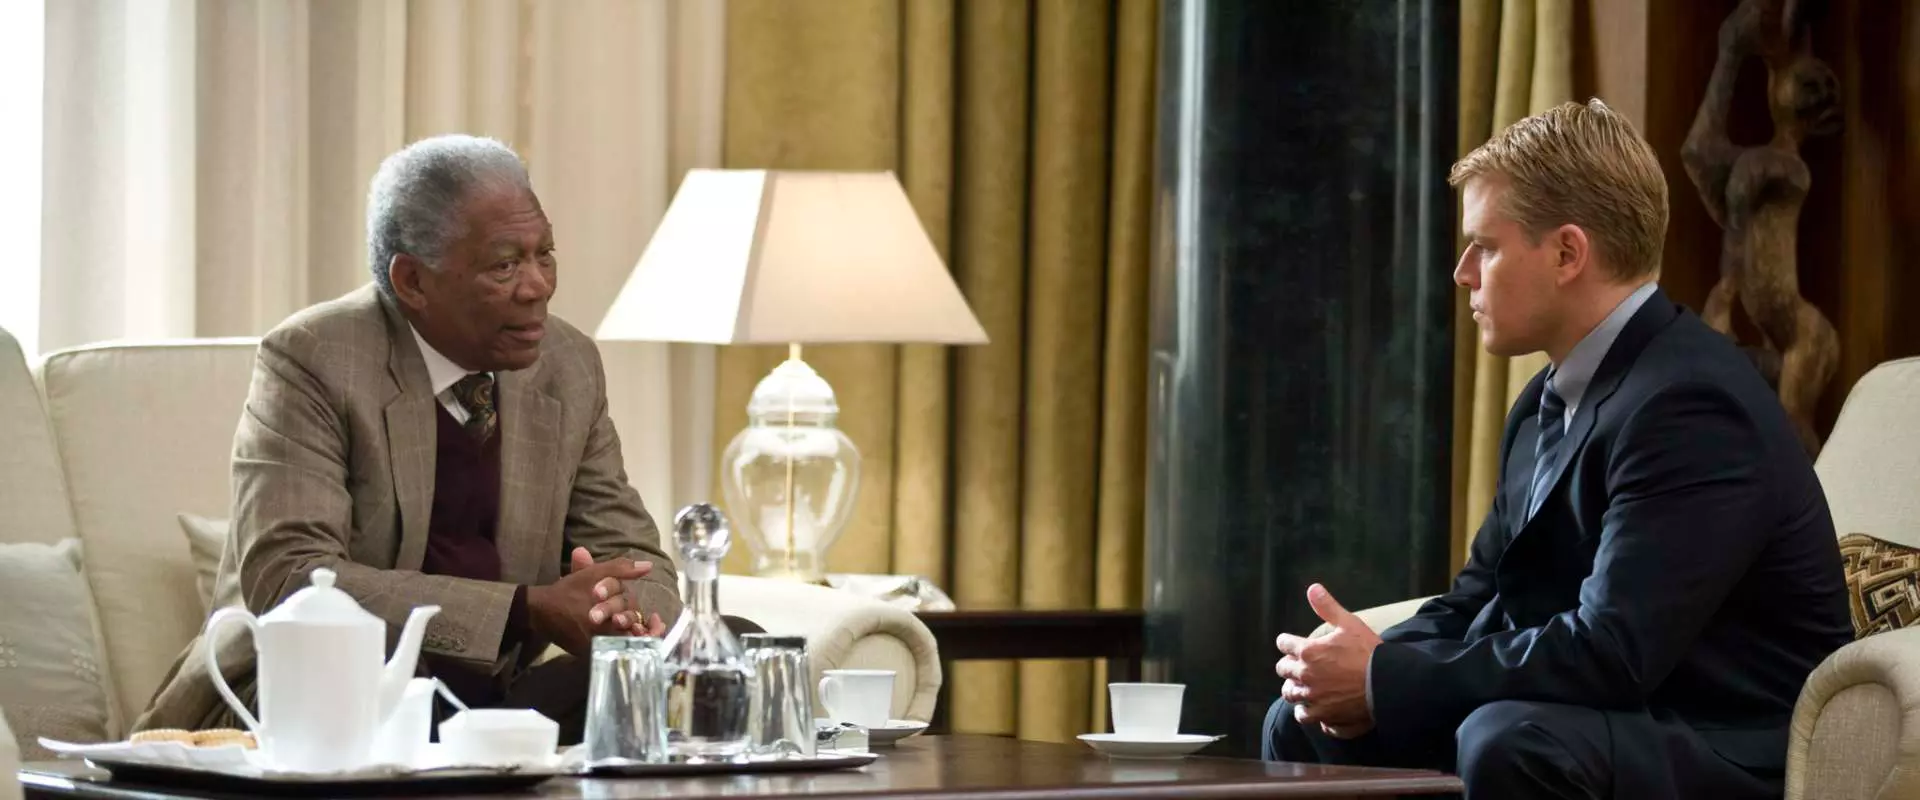 مت دیمون و مورگان فریمن در فیلم شکست ناپذیر-فریمن در نقش نلسون ماندلا